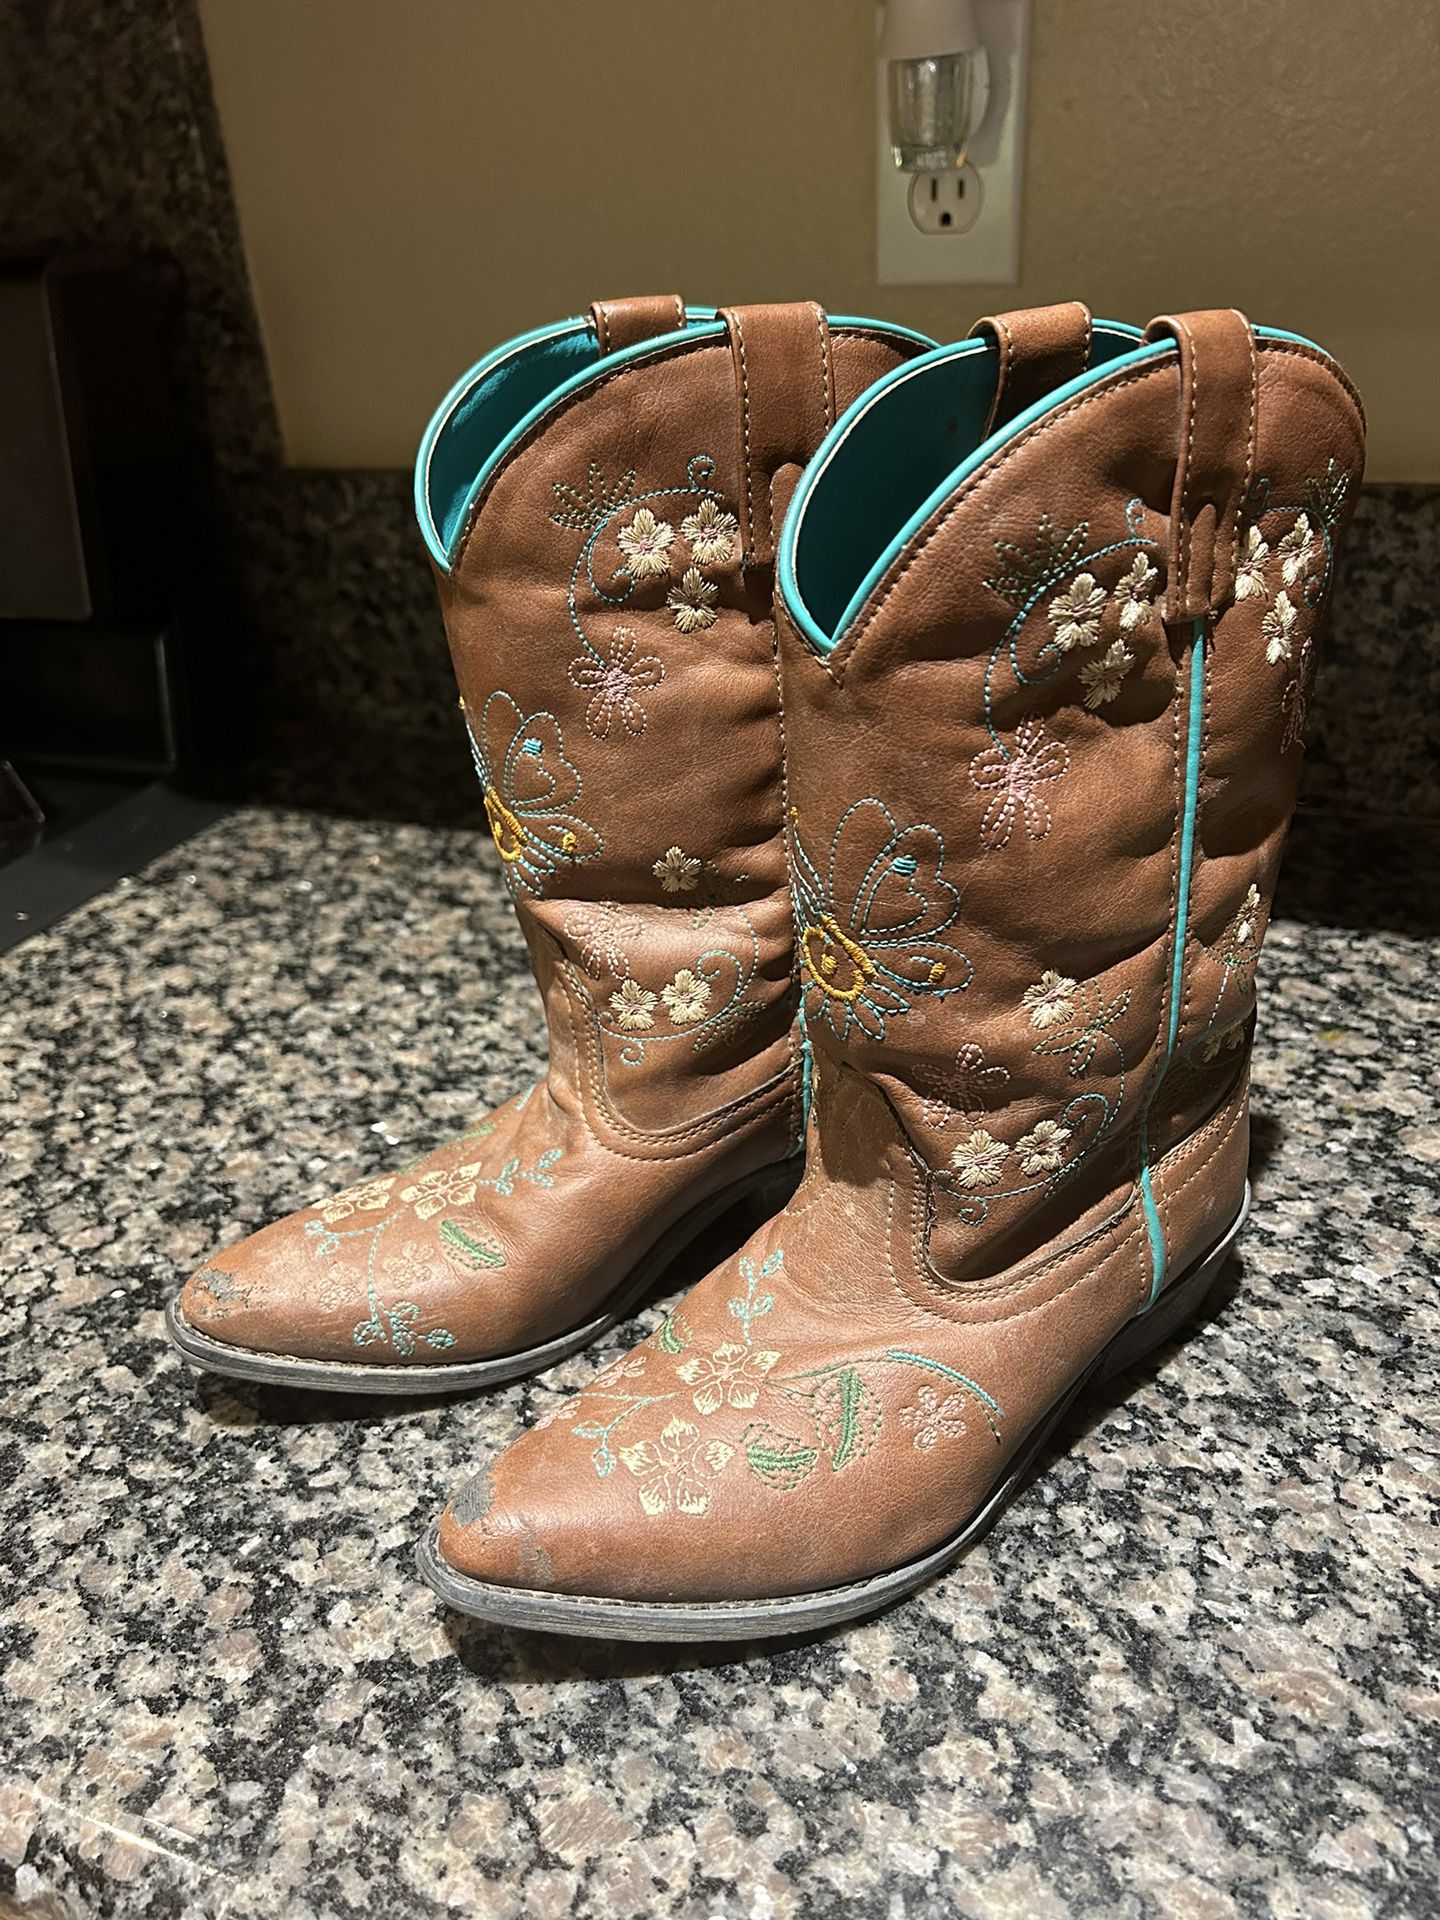 Cowboy Boots Girls 